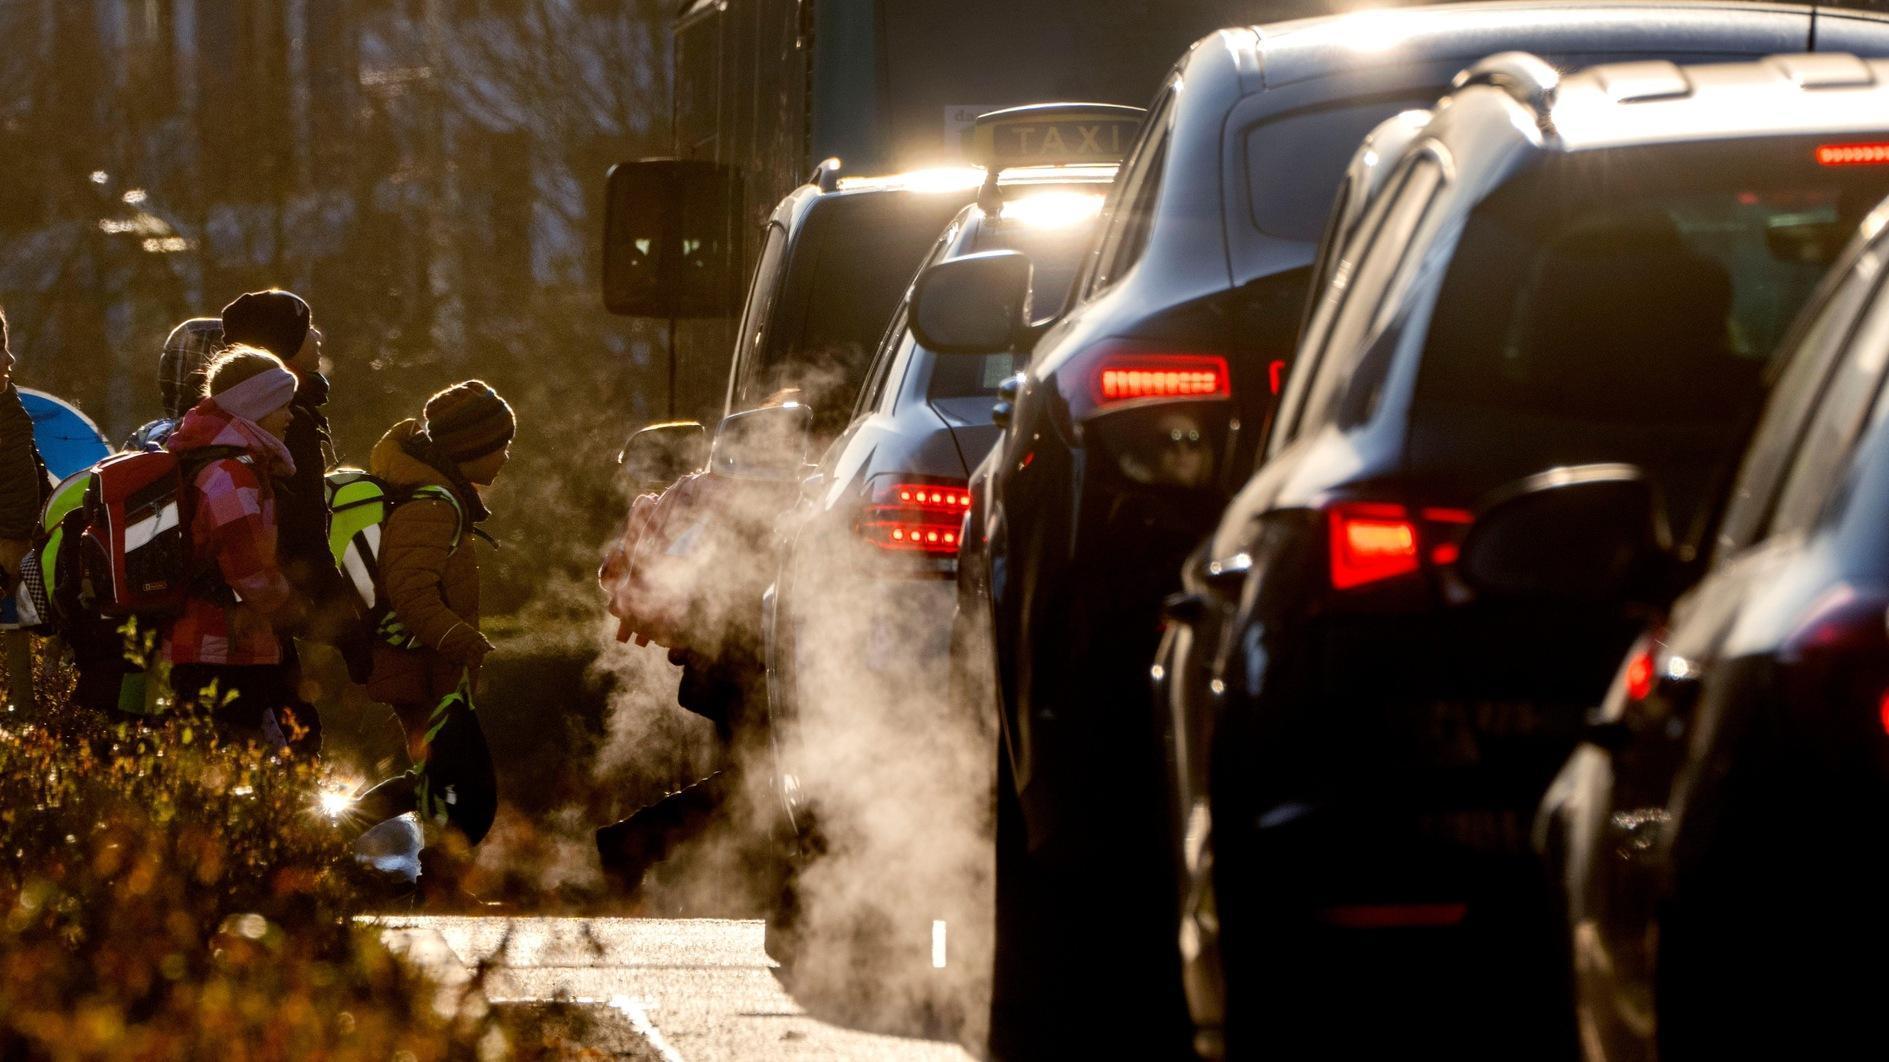 EU-regels zijn er niet in geslaagd de uitstoot van auto’s terug te dringen: rapport